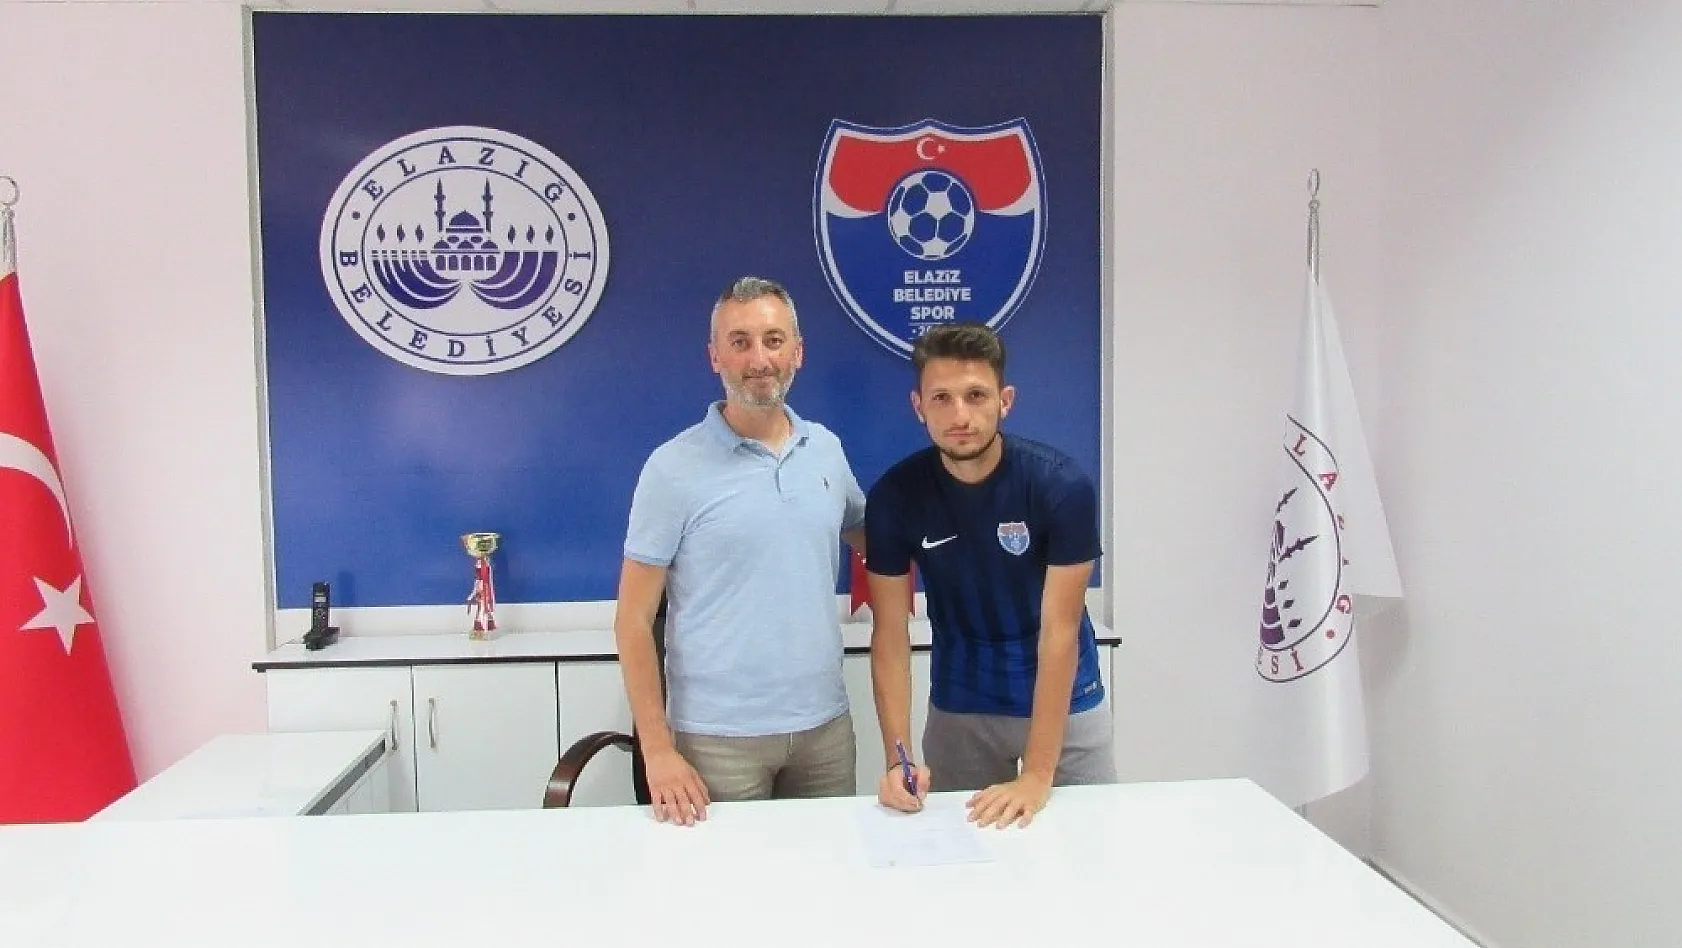 Elaziz Belediyespor'a, 3 yeni futbolcu